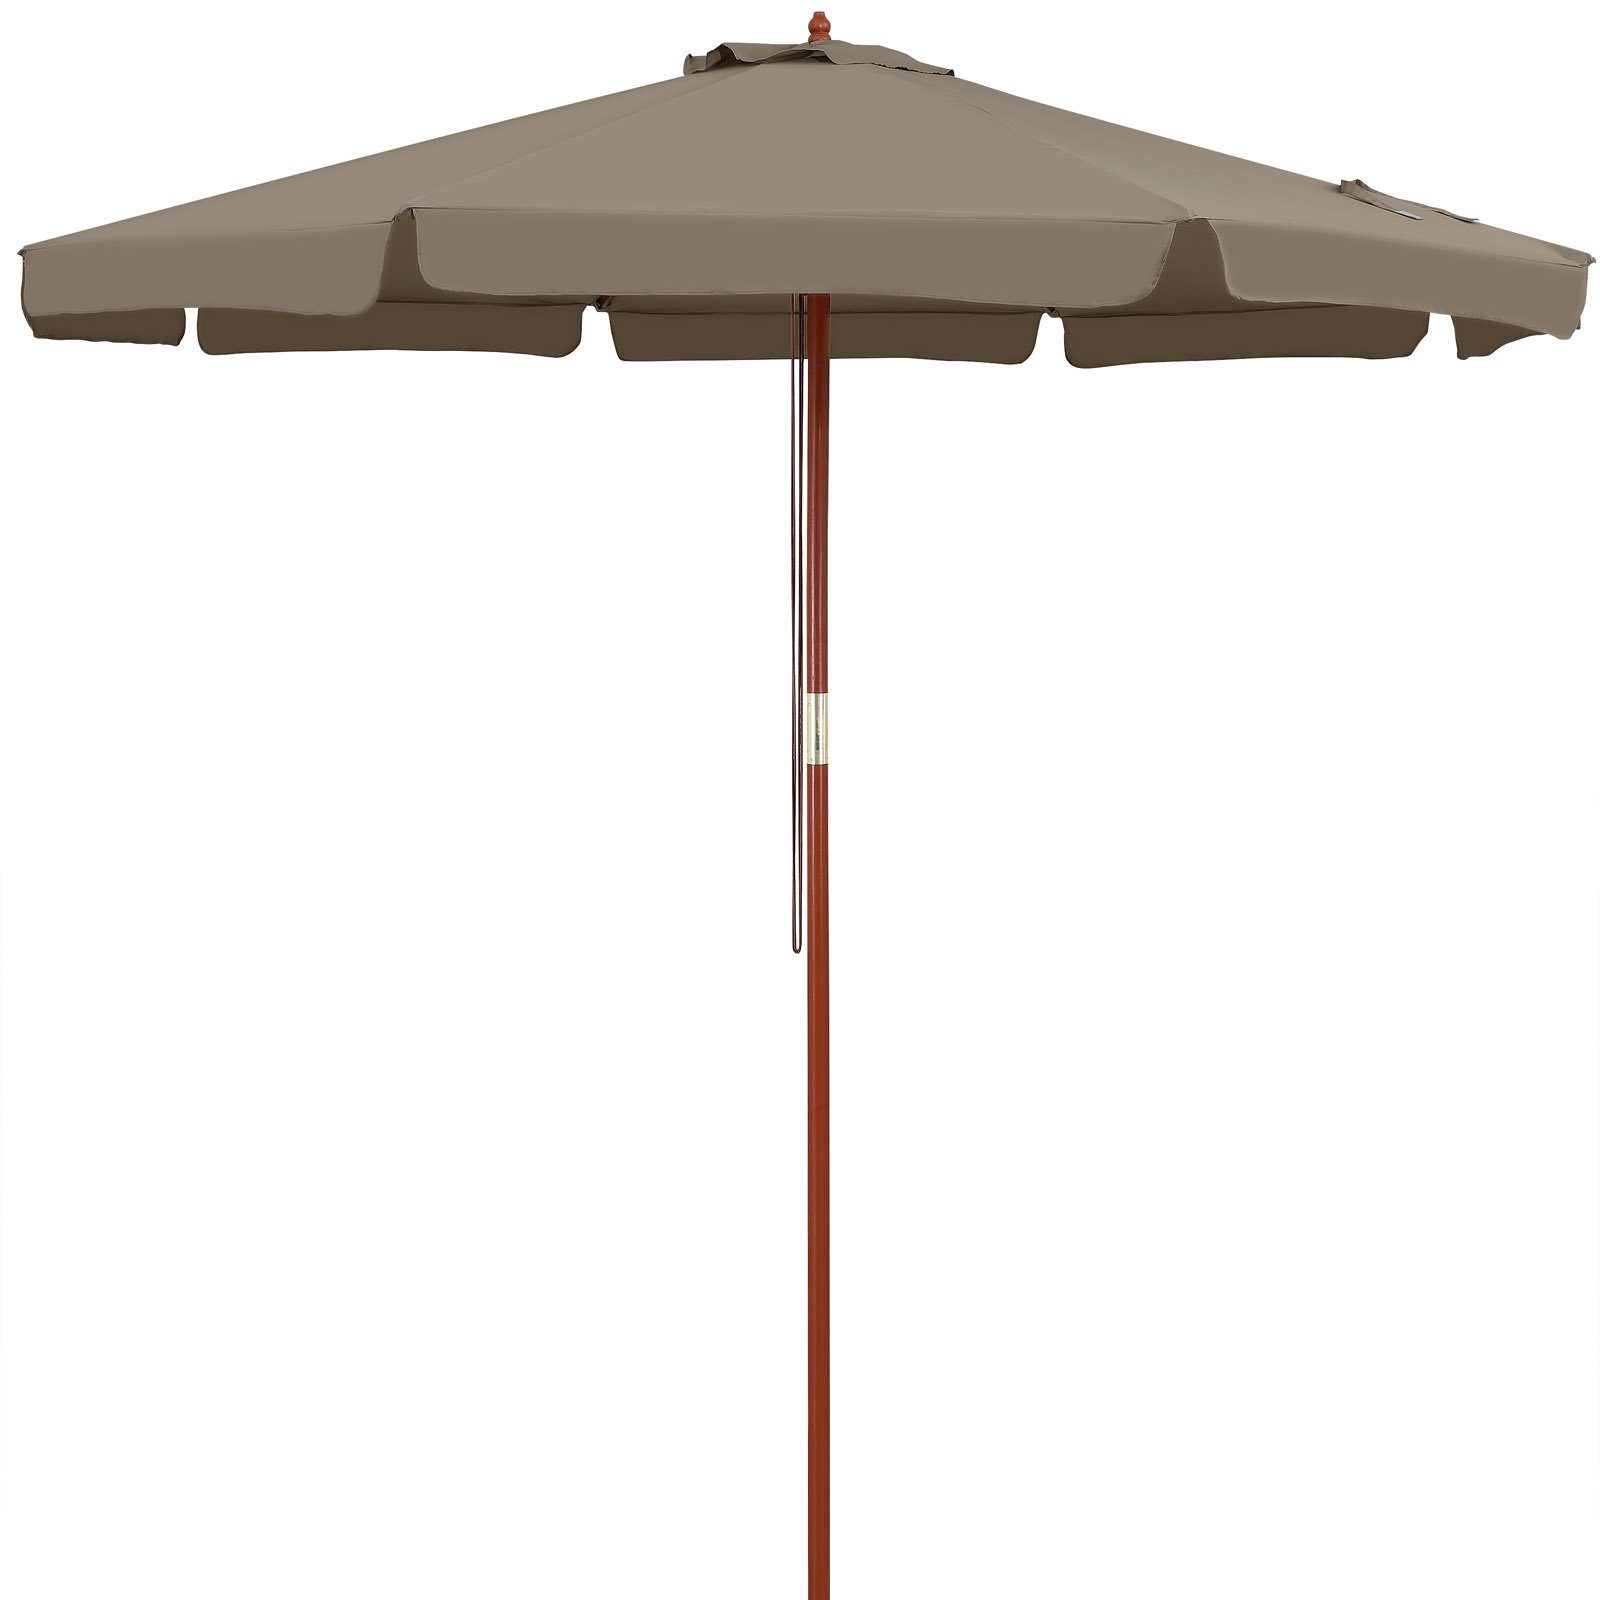 Kingsleeve Sonnenschirm, 330 cm Robuster Mast aus Holz UV Schutz 50+  Wasserabweisend Leichtgängiges Seilzugsystem Windöffnung für stabilen Stand  Marktschirm Gartenschirm Balkonschirm online kaufen | OTTO